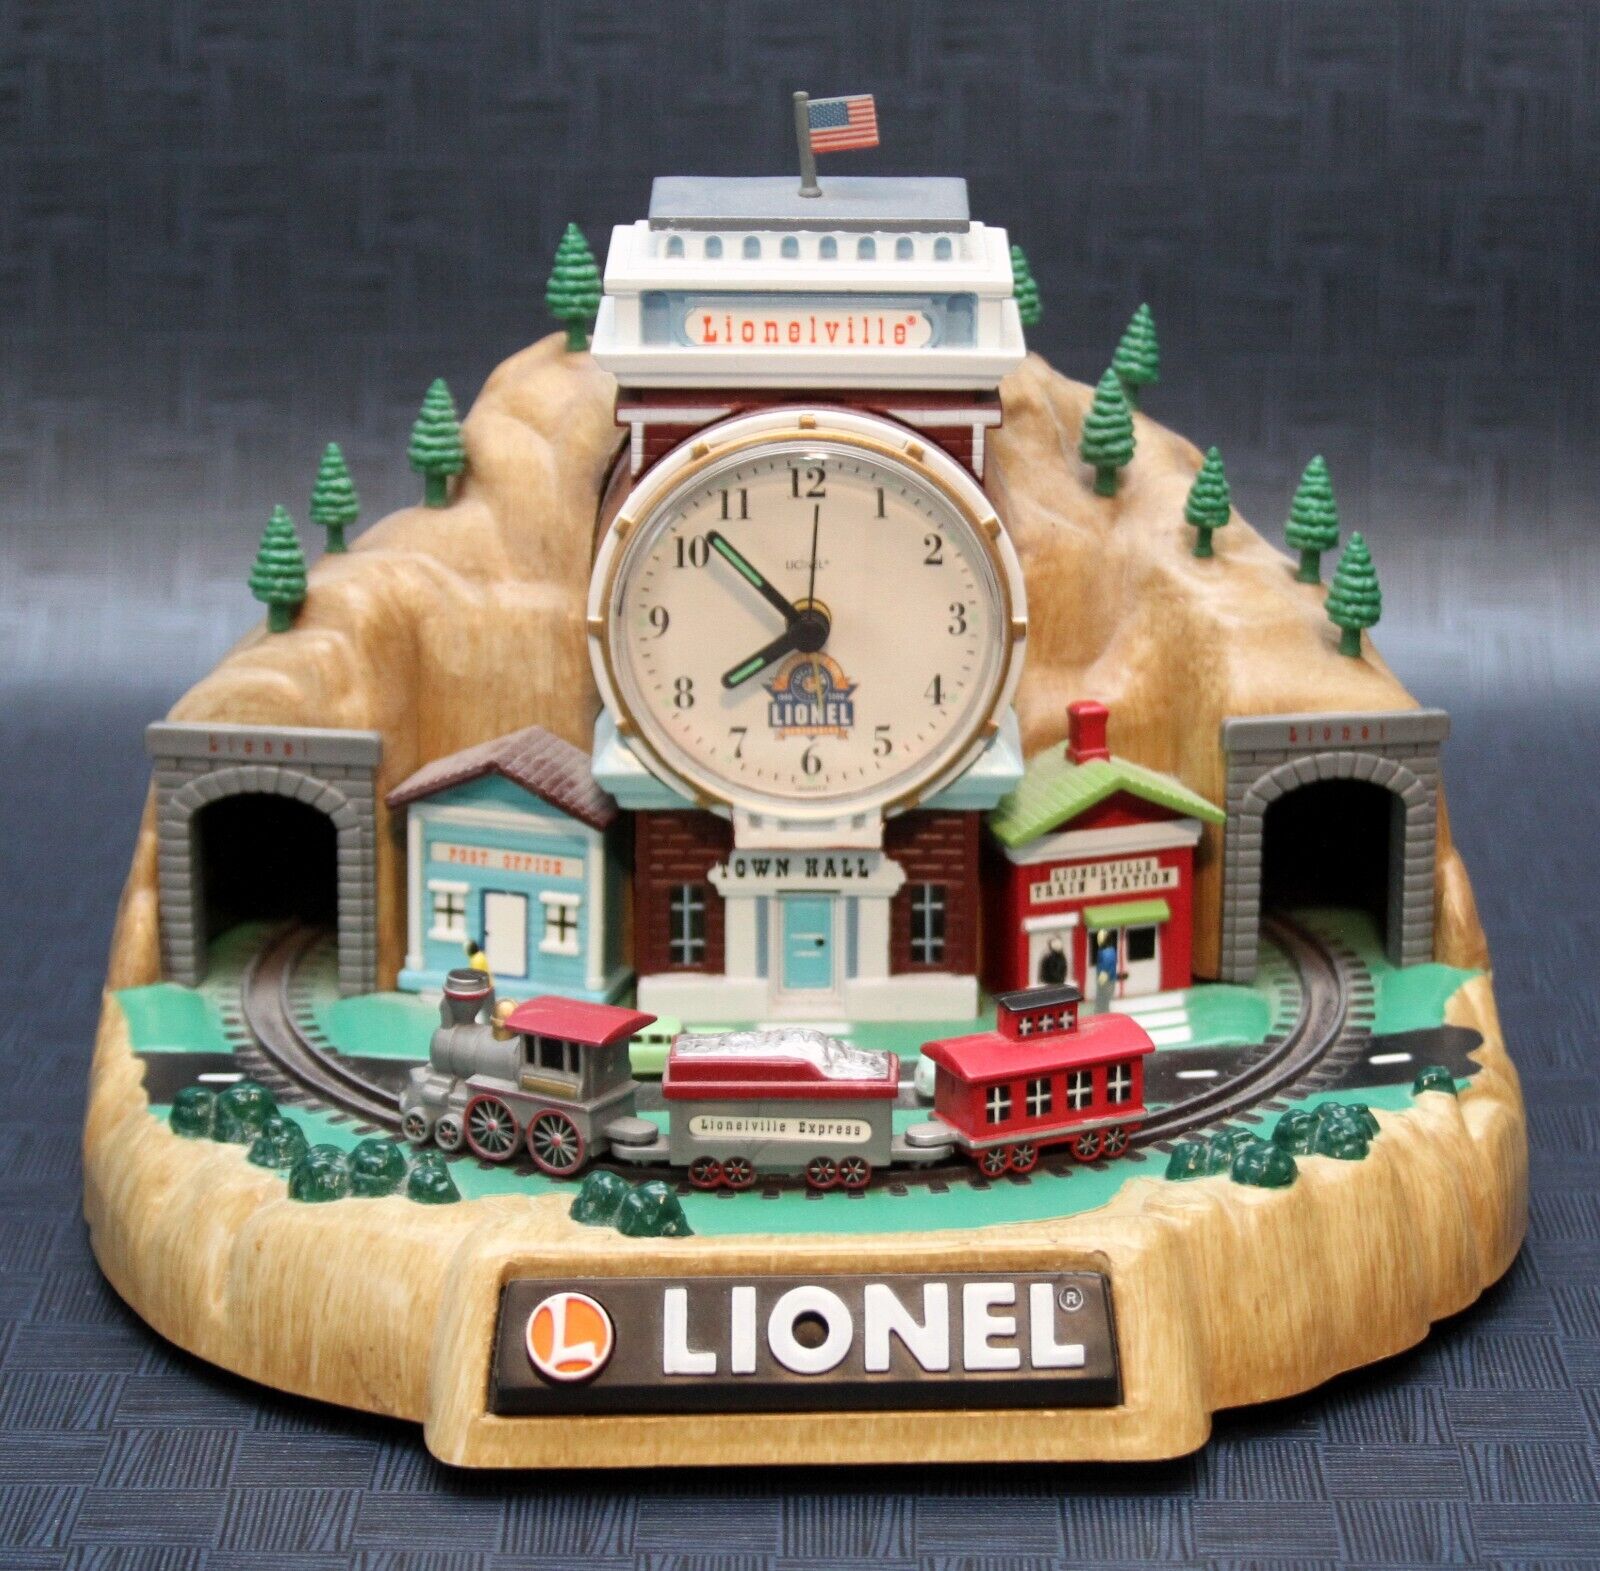 Lionel 100th Anniversary Lionelville Railroad Station Alarm Clock w/Train